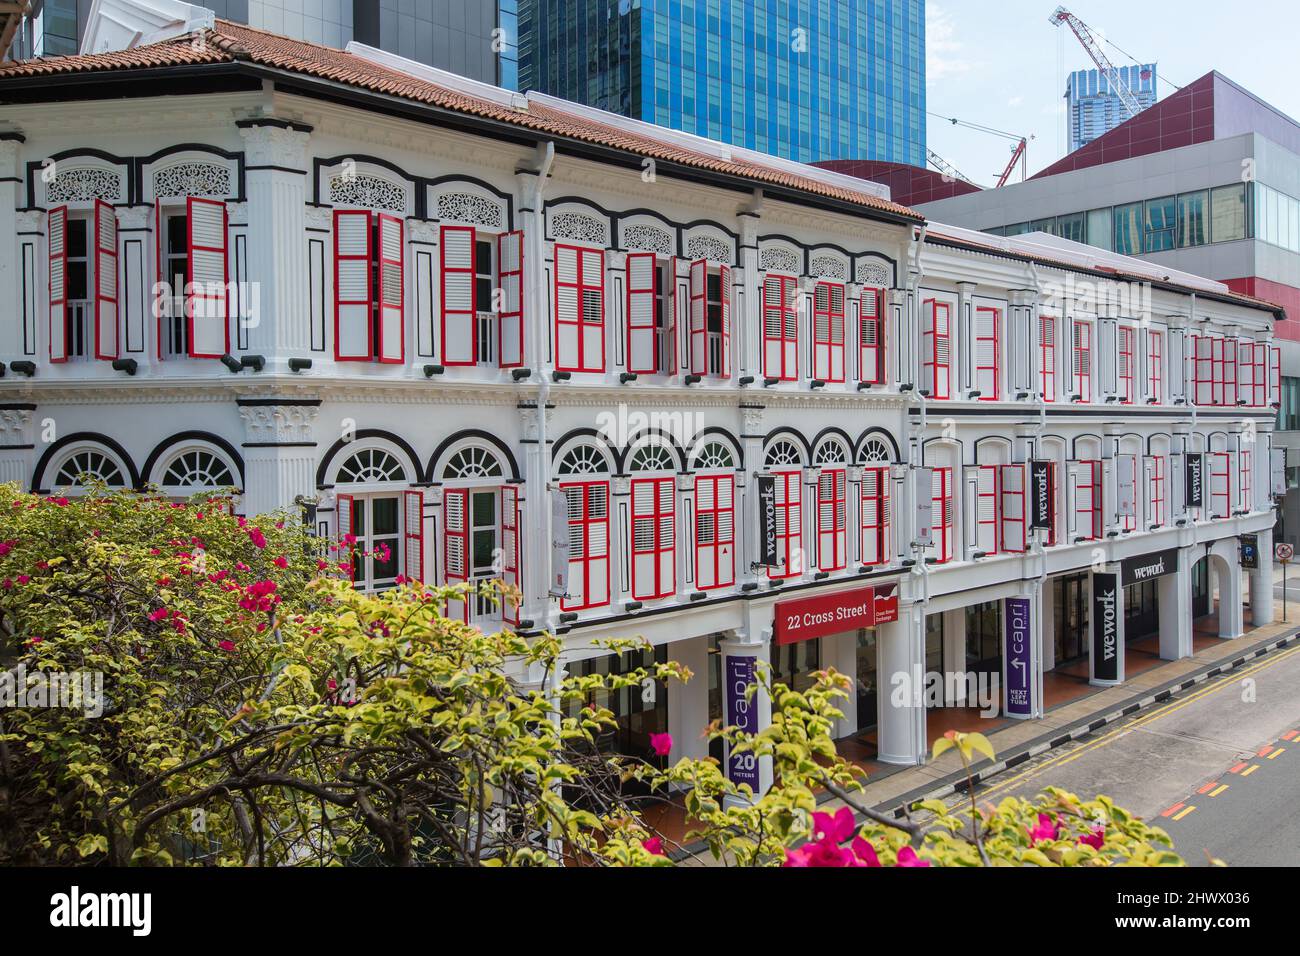 Les vieilles maisons d'achats ont refait leur place dans une structure commerciale pour les affaires. Chinatown, Singapour. Banque D'Images